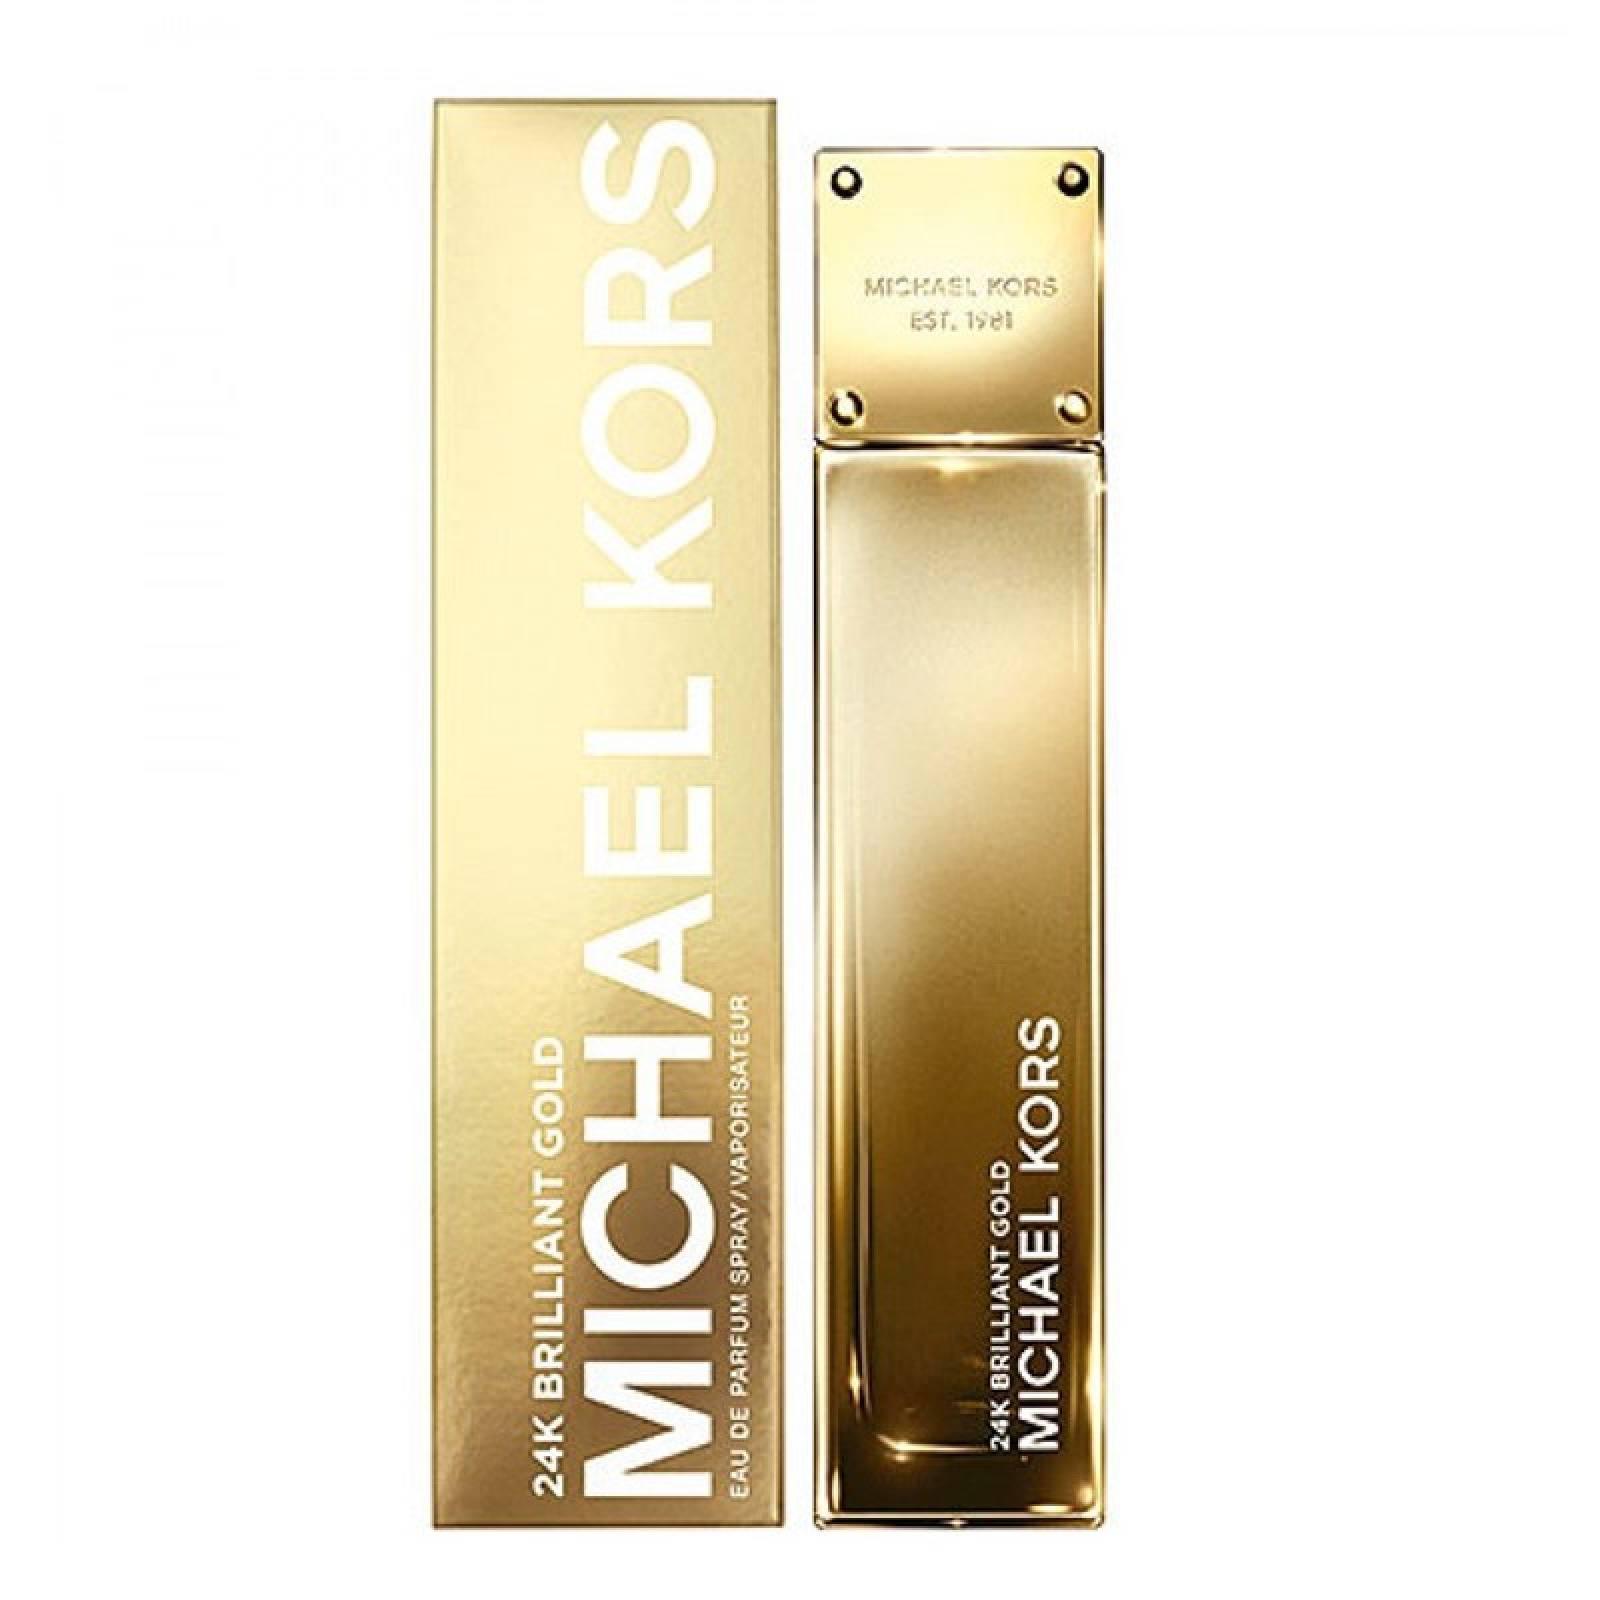 Michael Kors 24K Brilliant Gold 100 Ml Eau De Parfum Spray De Michael Kors de Dama